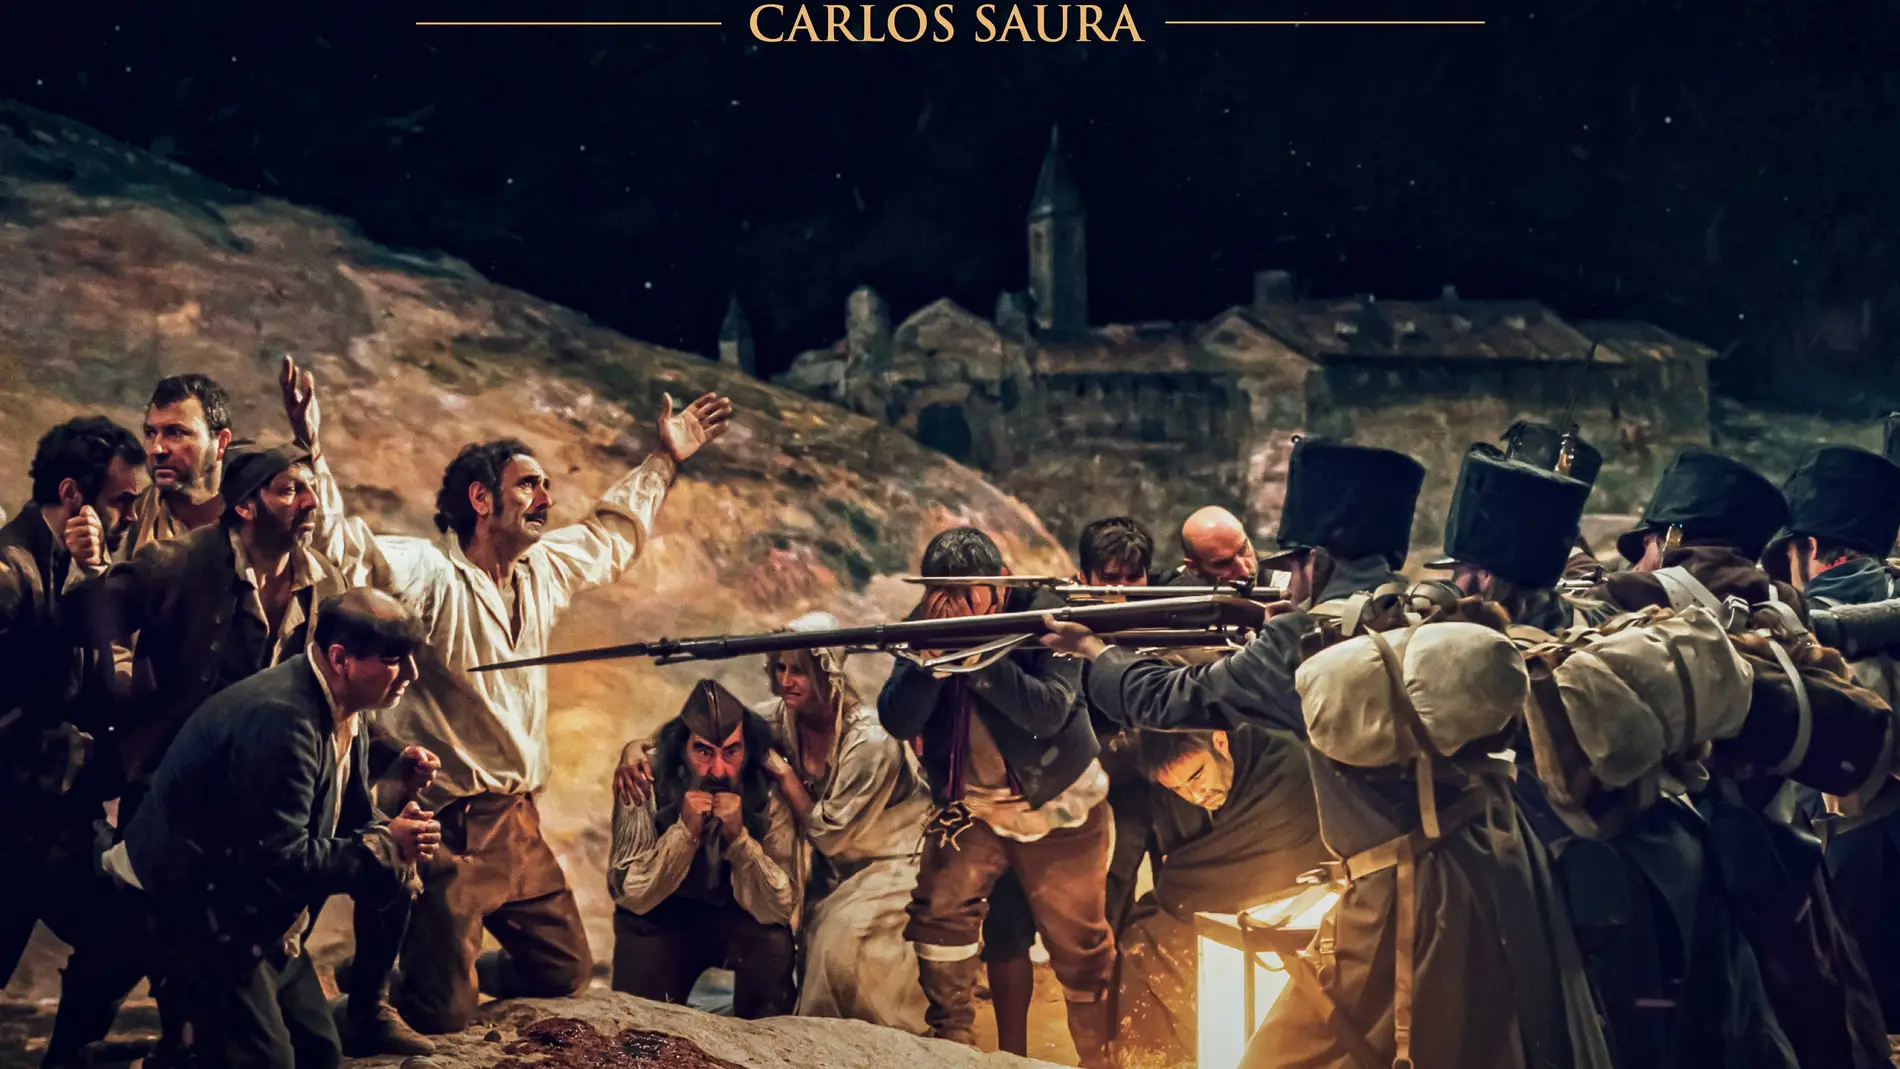 Cartel del cortometraje filmado por Saura sobre la obra de Goya